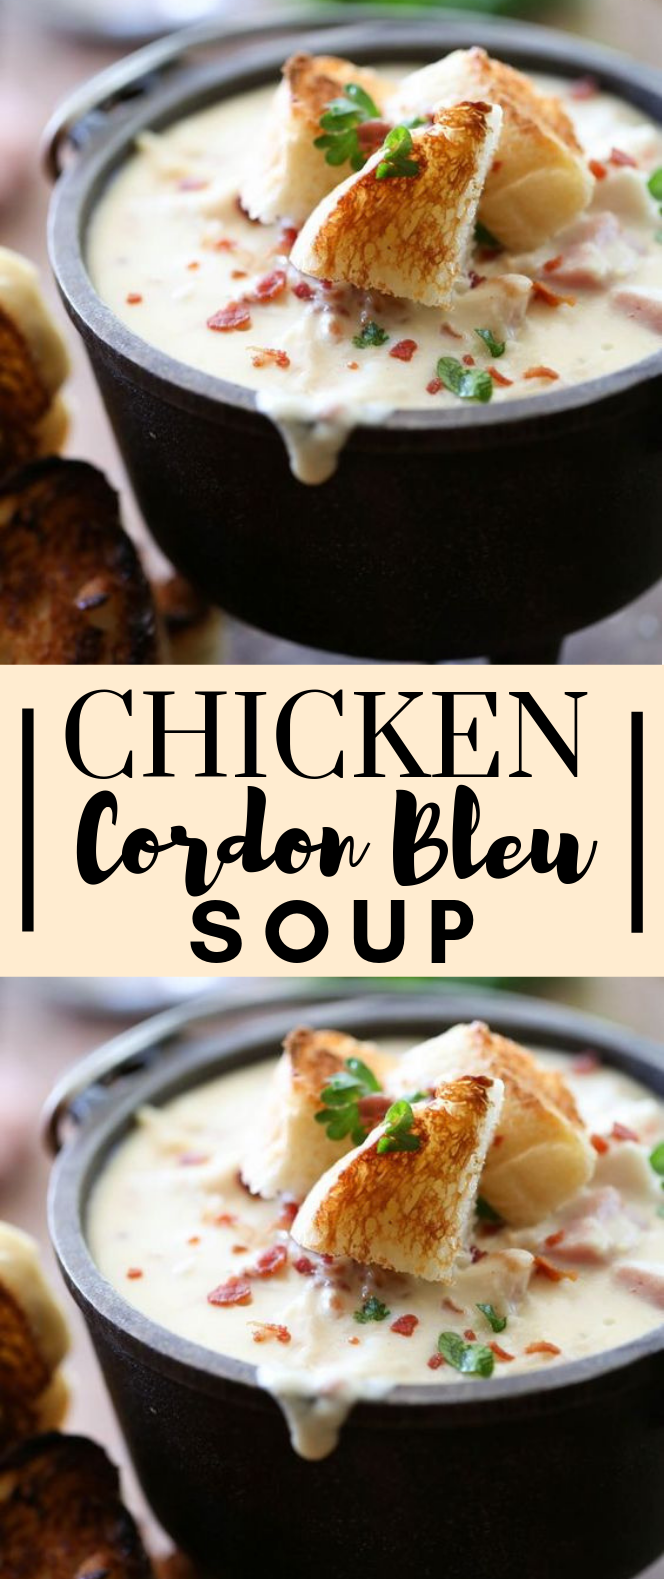 Chicken Cordon Bleu Soup